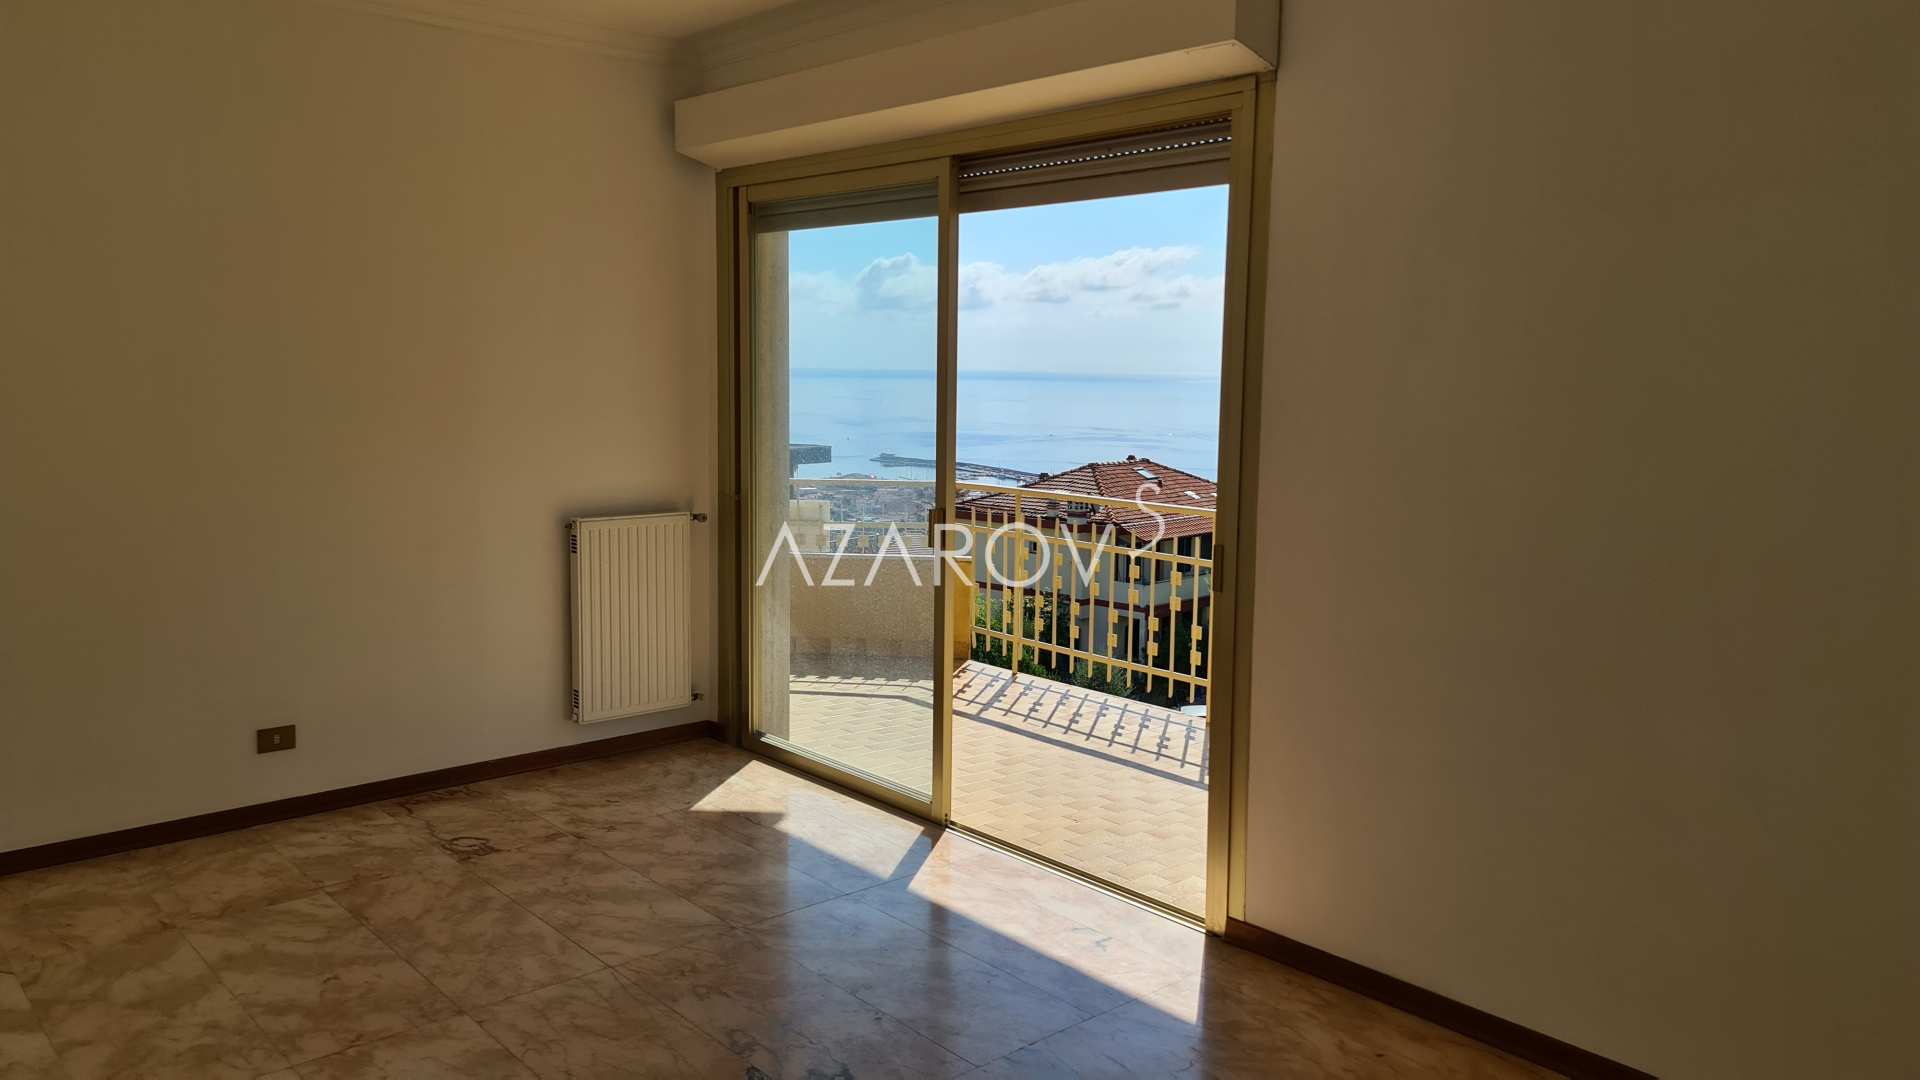 Appartement in Sanremo met uitzicht op zee